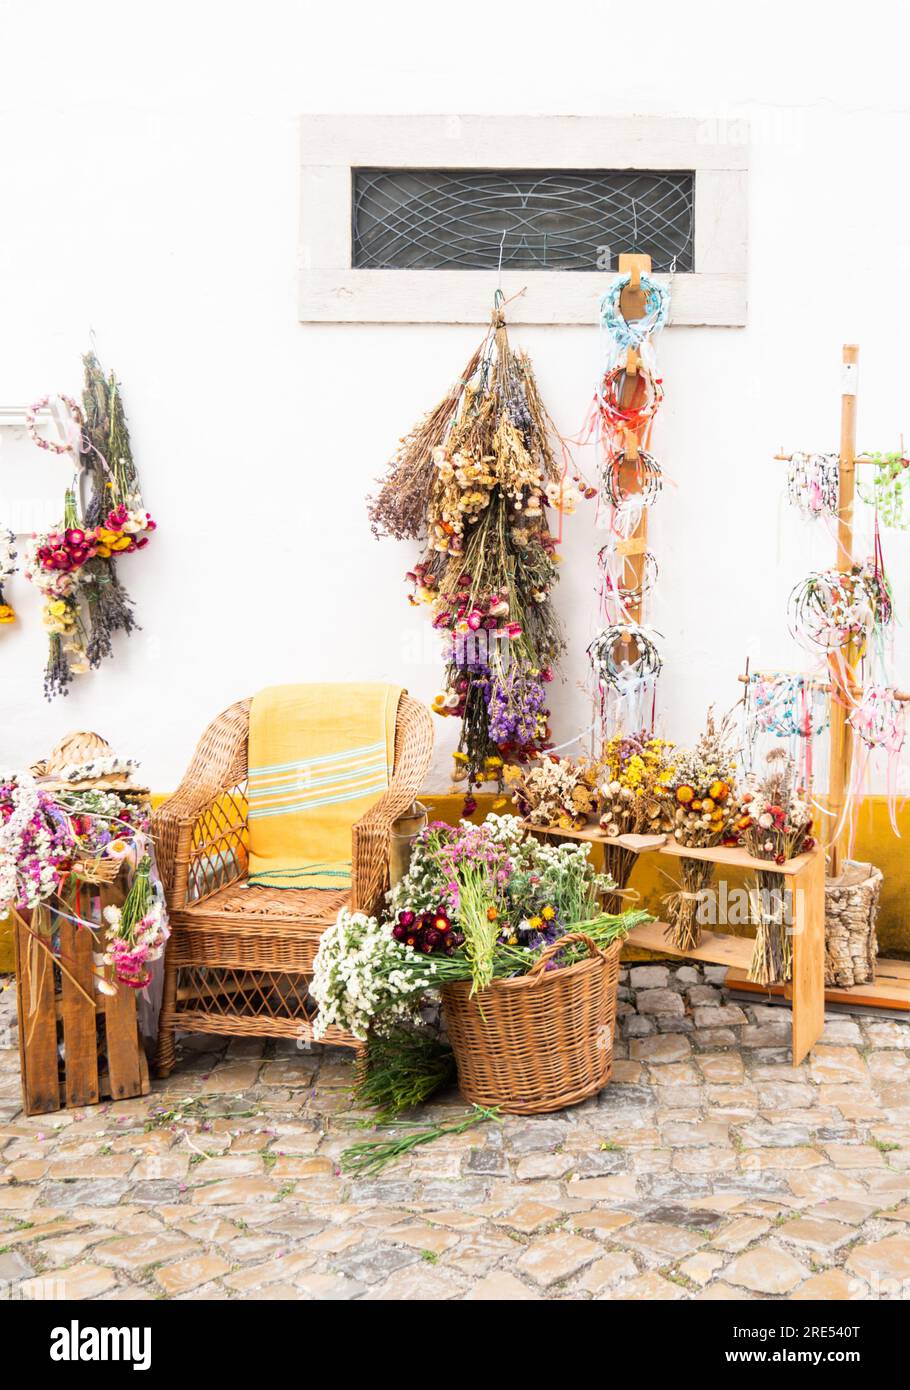 Fleuriste extérieur avec exposition sur le trottoir avec chaise en osier et paniers de fleurs fraîches et sèches Banque D'Images